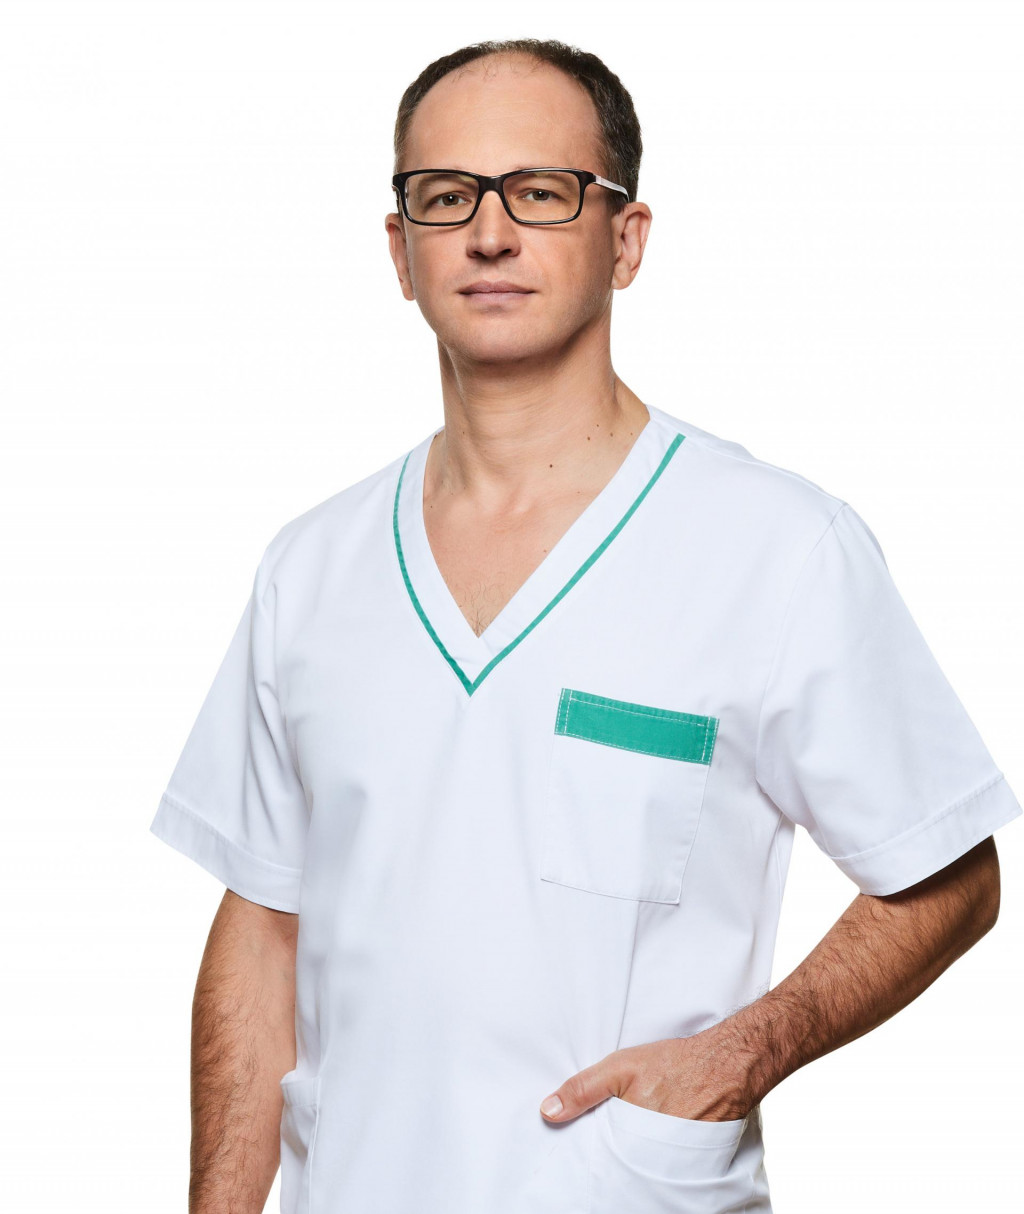 MUDr. Maroš Eľko primár oddelenia úrazovej chirurgie, Nemocnica Svet zdravia Michalovce